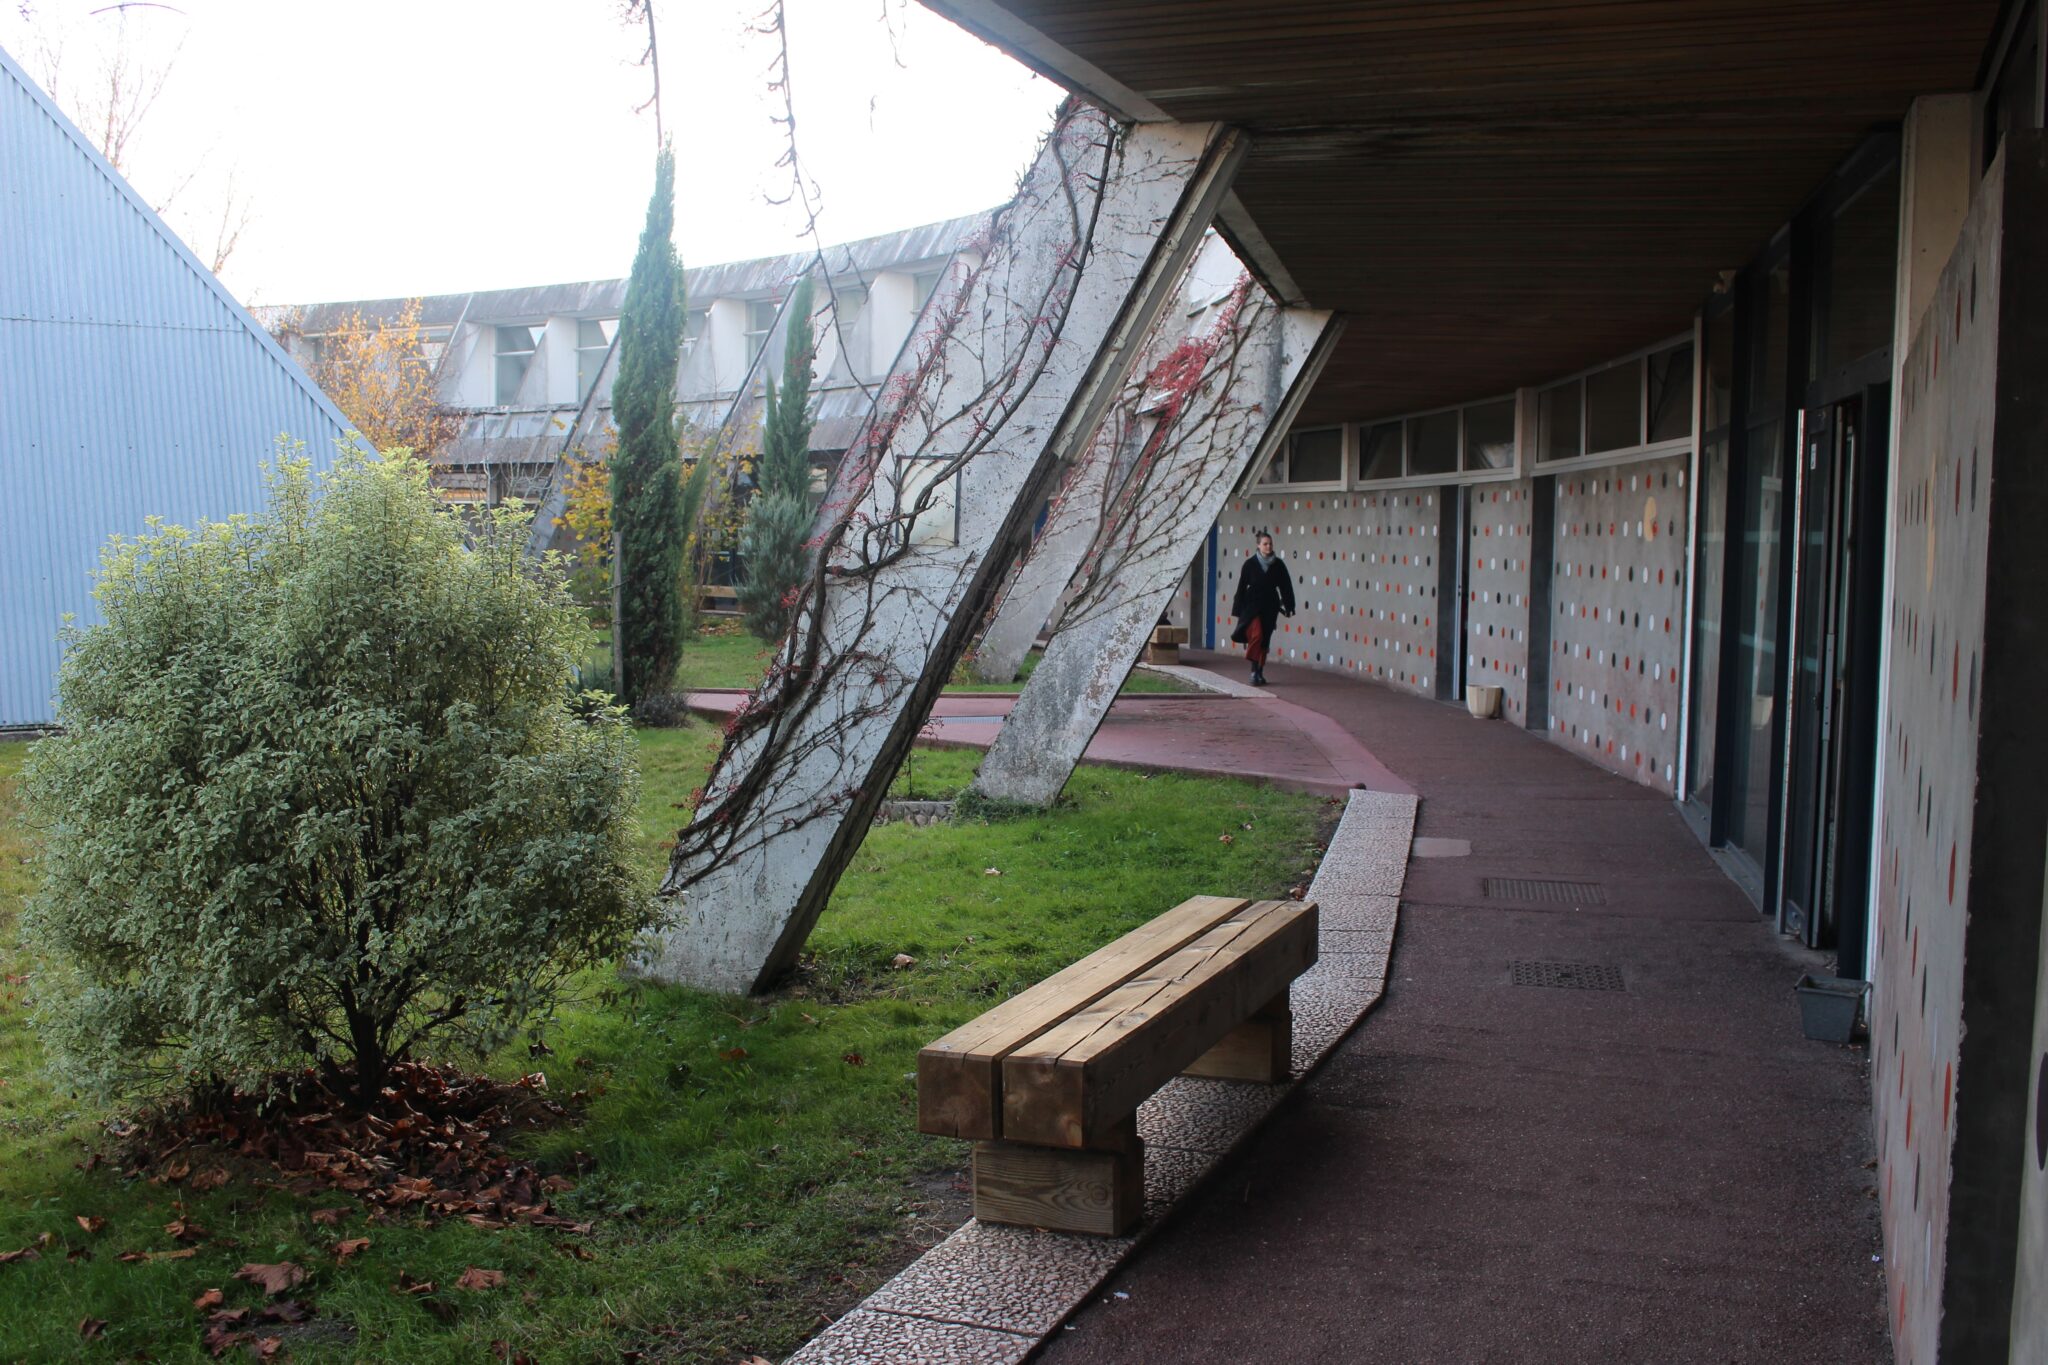 Les séances de travail ont lieu à l’école d’architecture de Bordeaux. Le projet devrait se concrétiser par un bâtiment d’environ 100 m² au campus de Talence dès 2023 avant, peut-être, d’être répliqué en d’autres endroits.